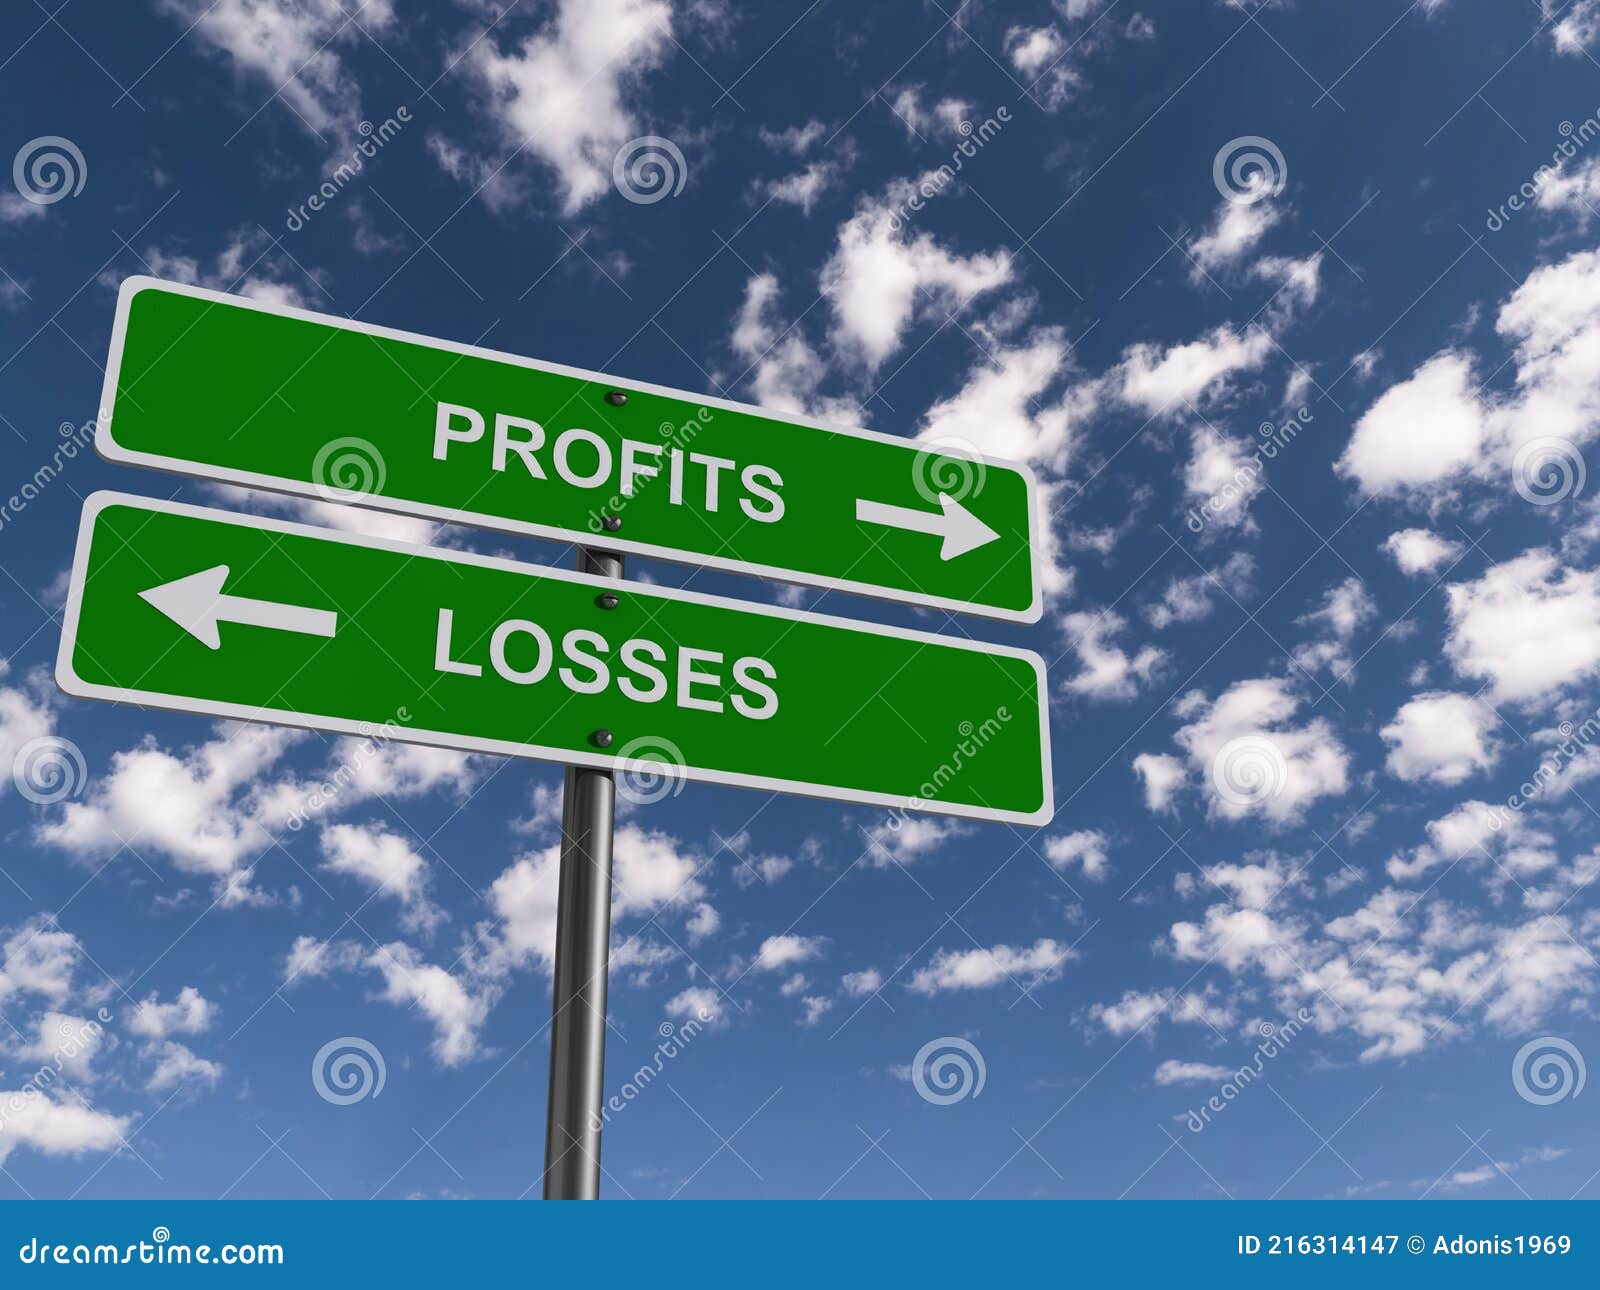 profits losses traffic sign